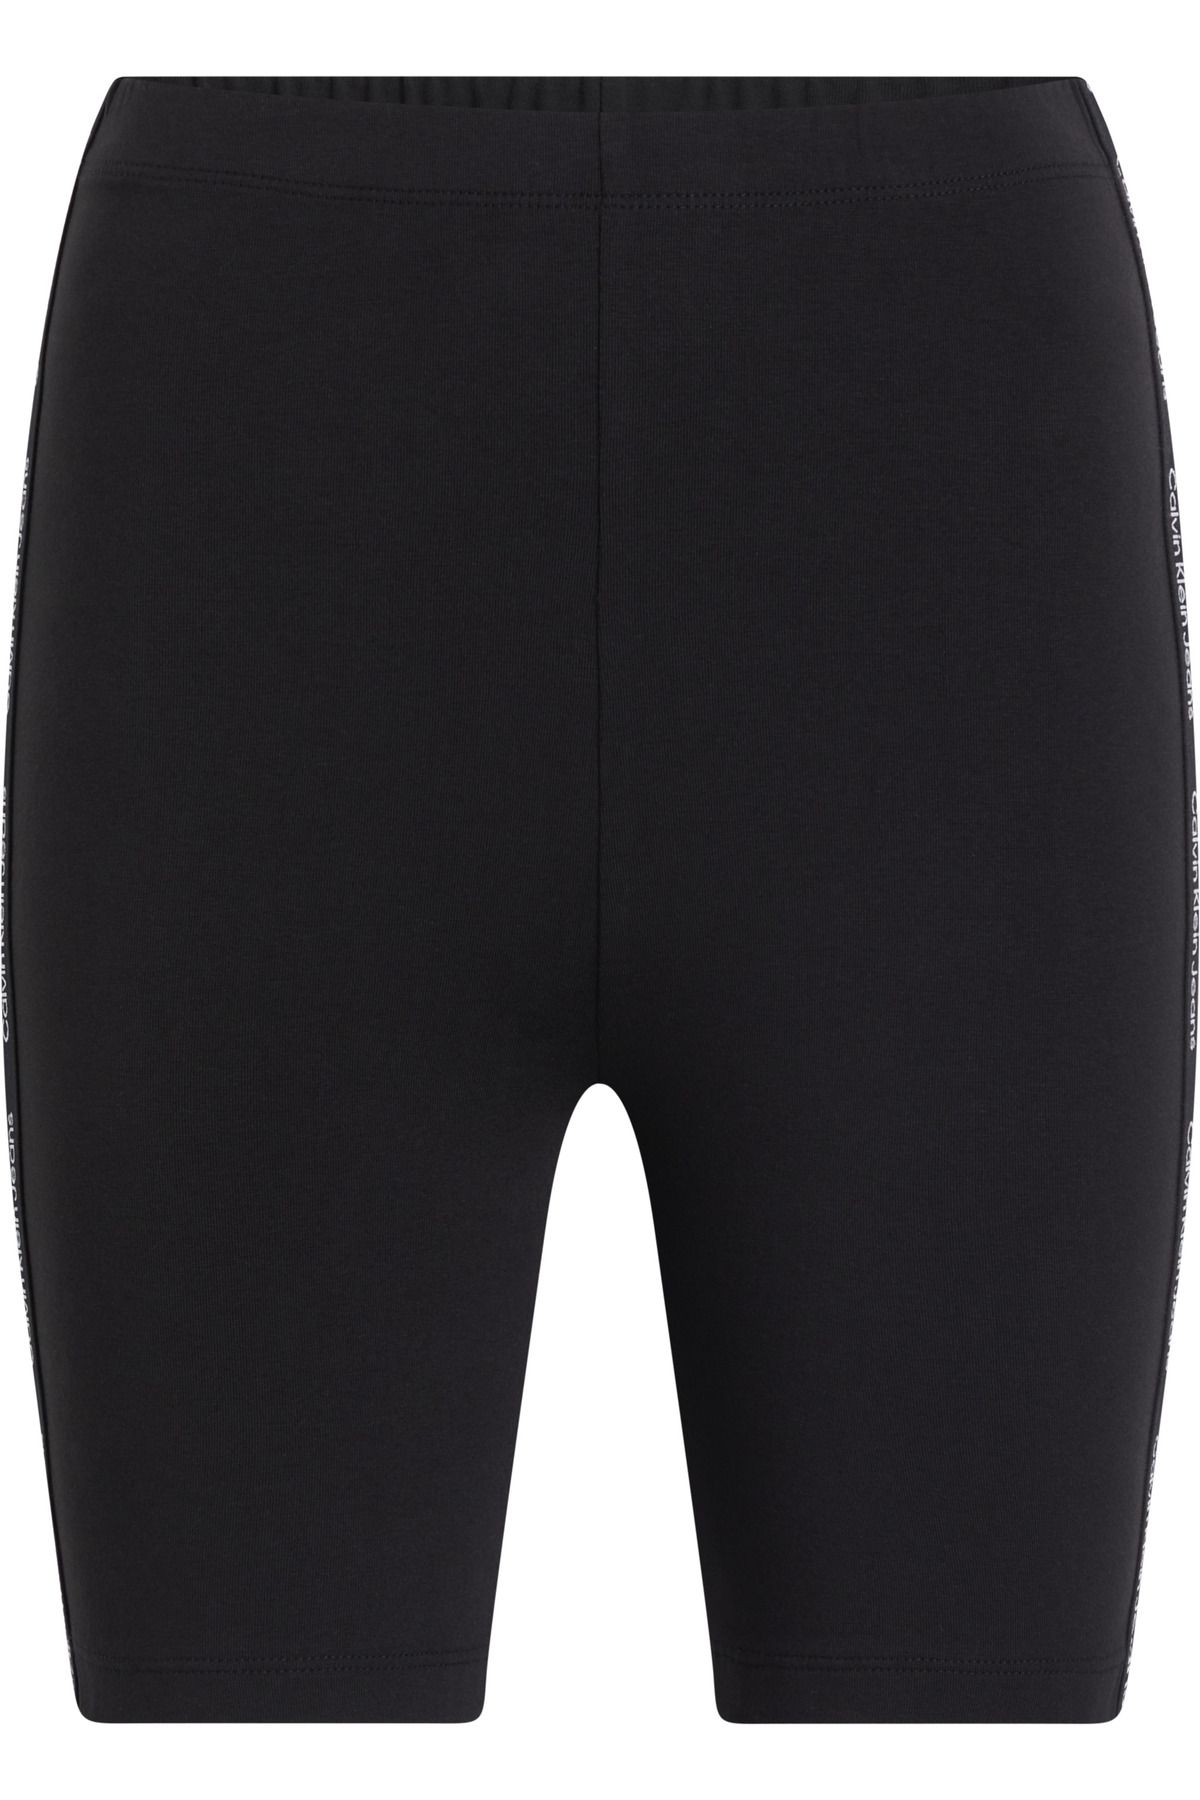 Calvin Klein Kadın Marka Logolu Elastik Bantlı Yüksek Belli Nefes Alabilen Kumaşlı Sportif Görünümlü Siyah Şort J